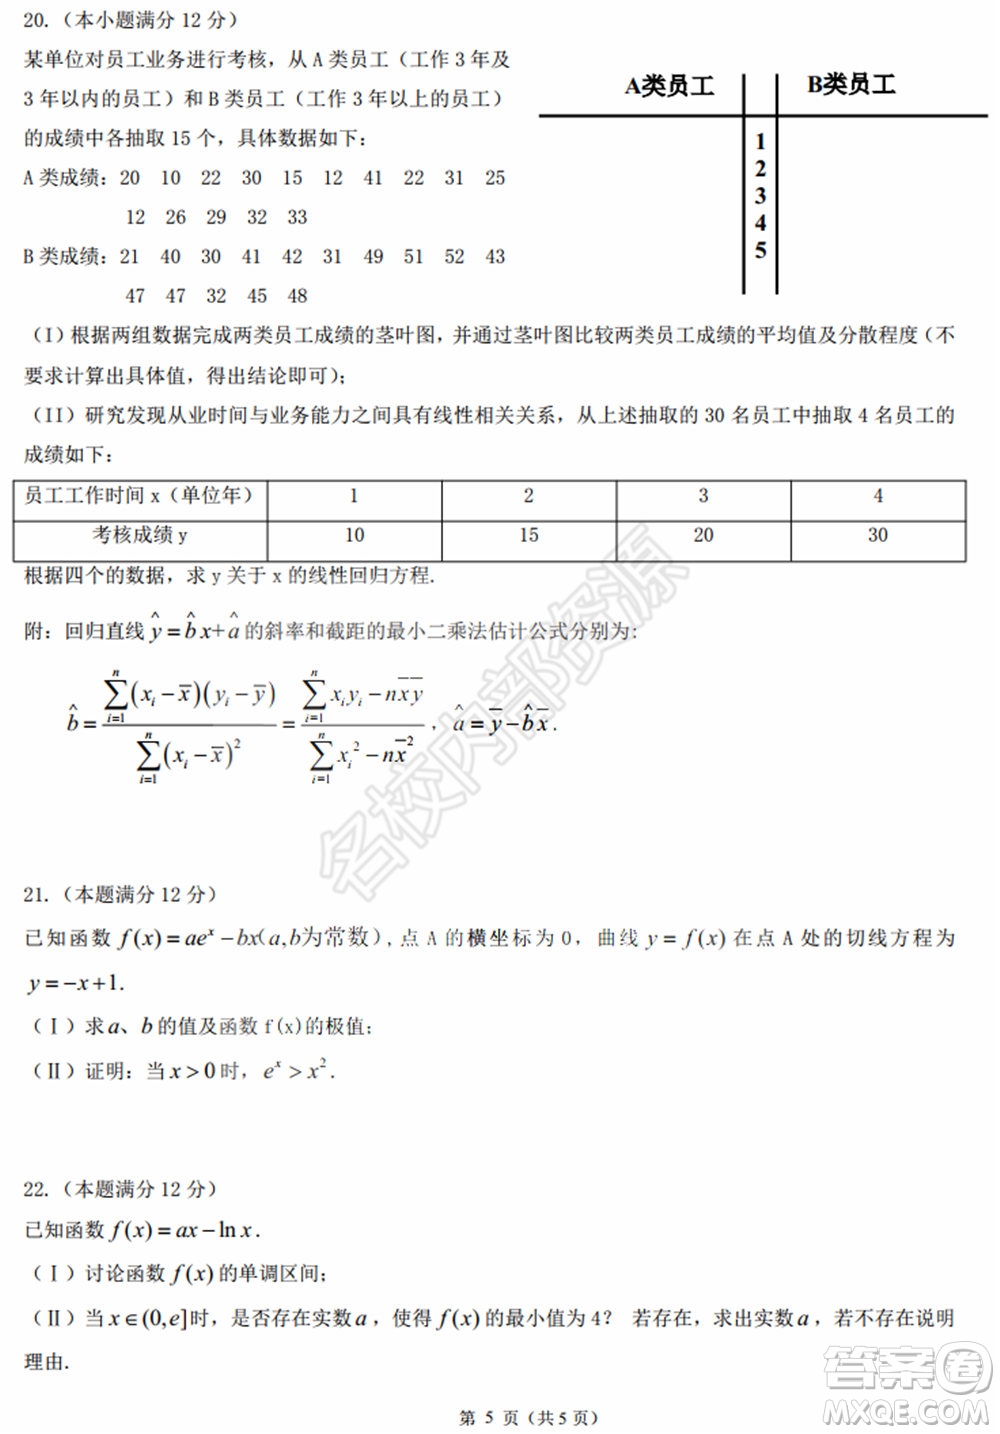 黑龙江省实验中学2019-2020学年下学期高二年级期中考试文科数学试卷及答案